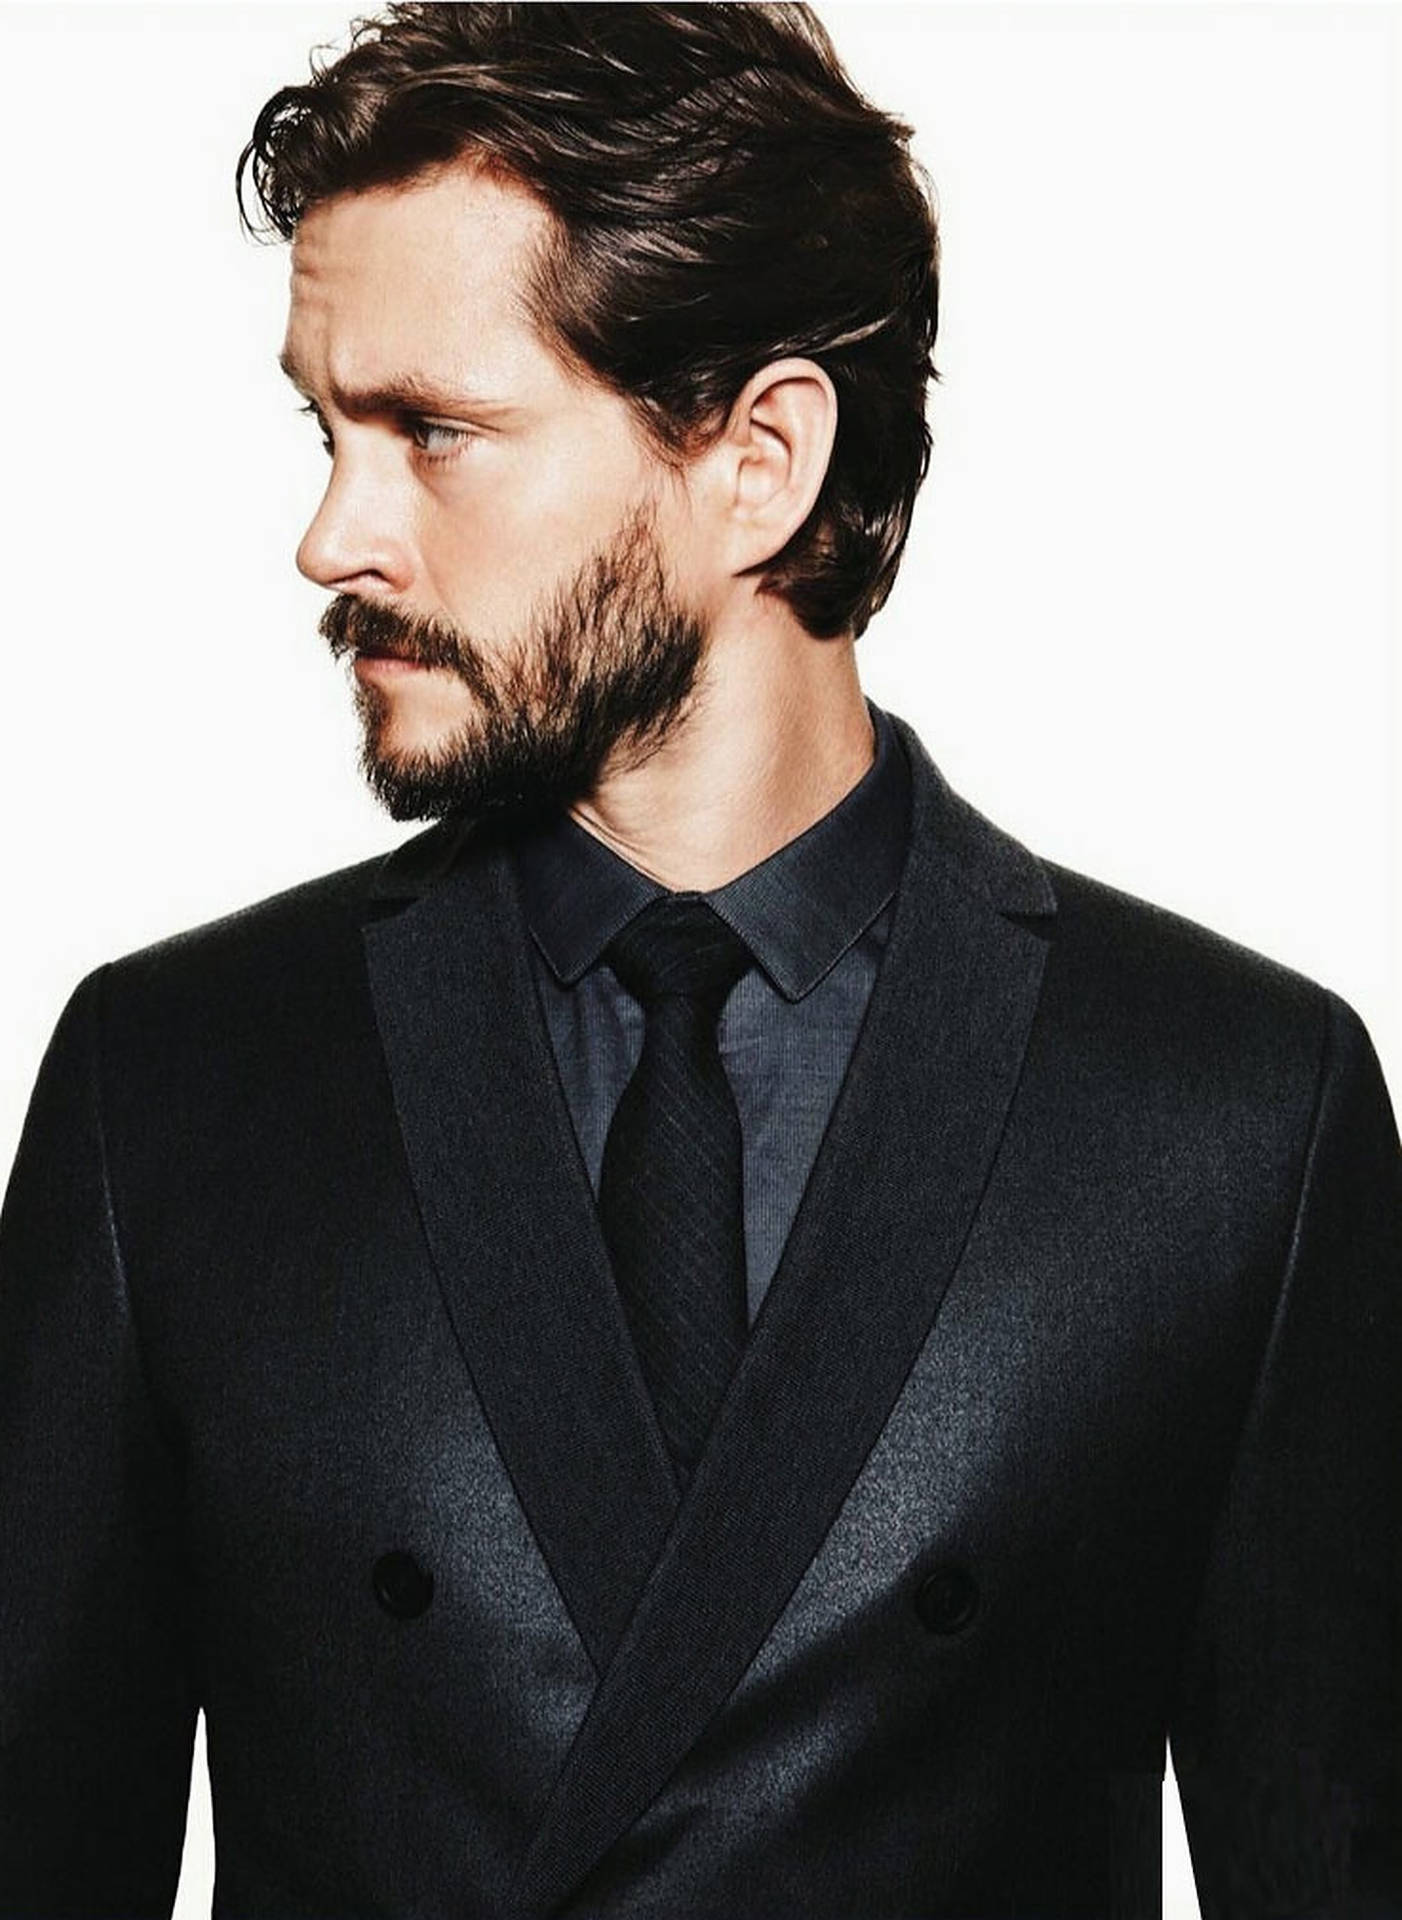 Hugh Dancy In Black Suit